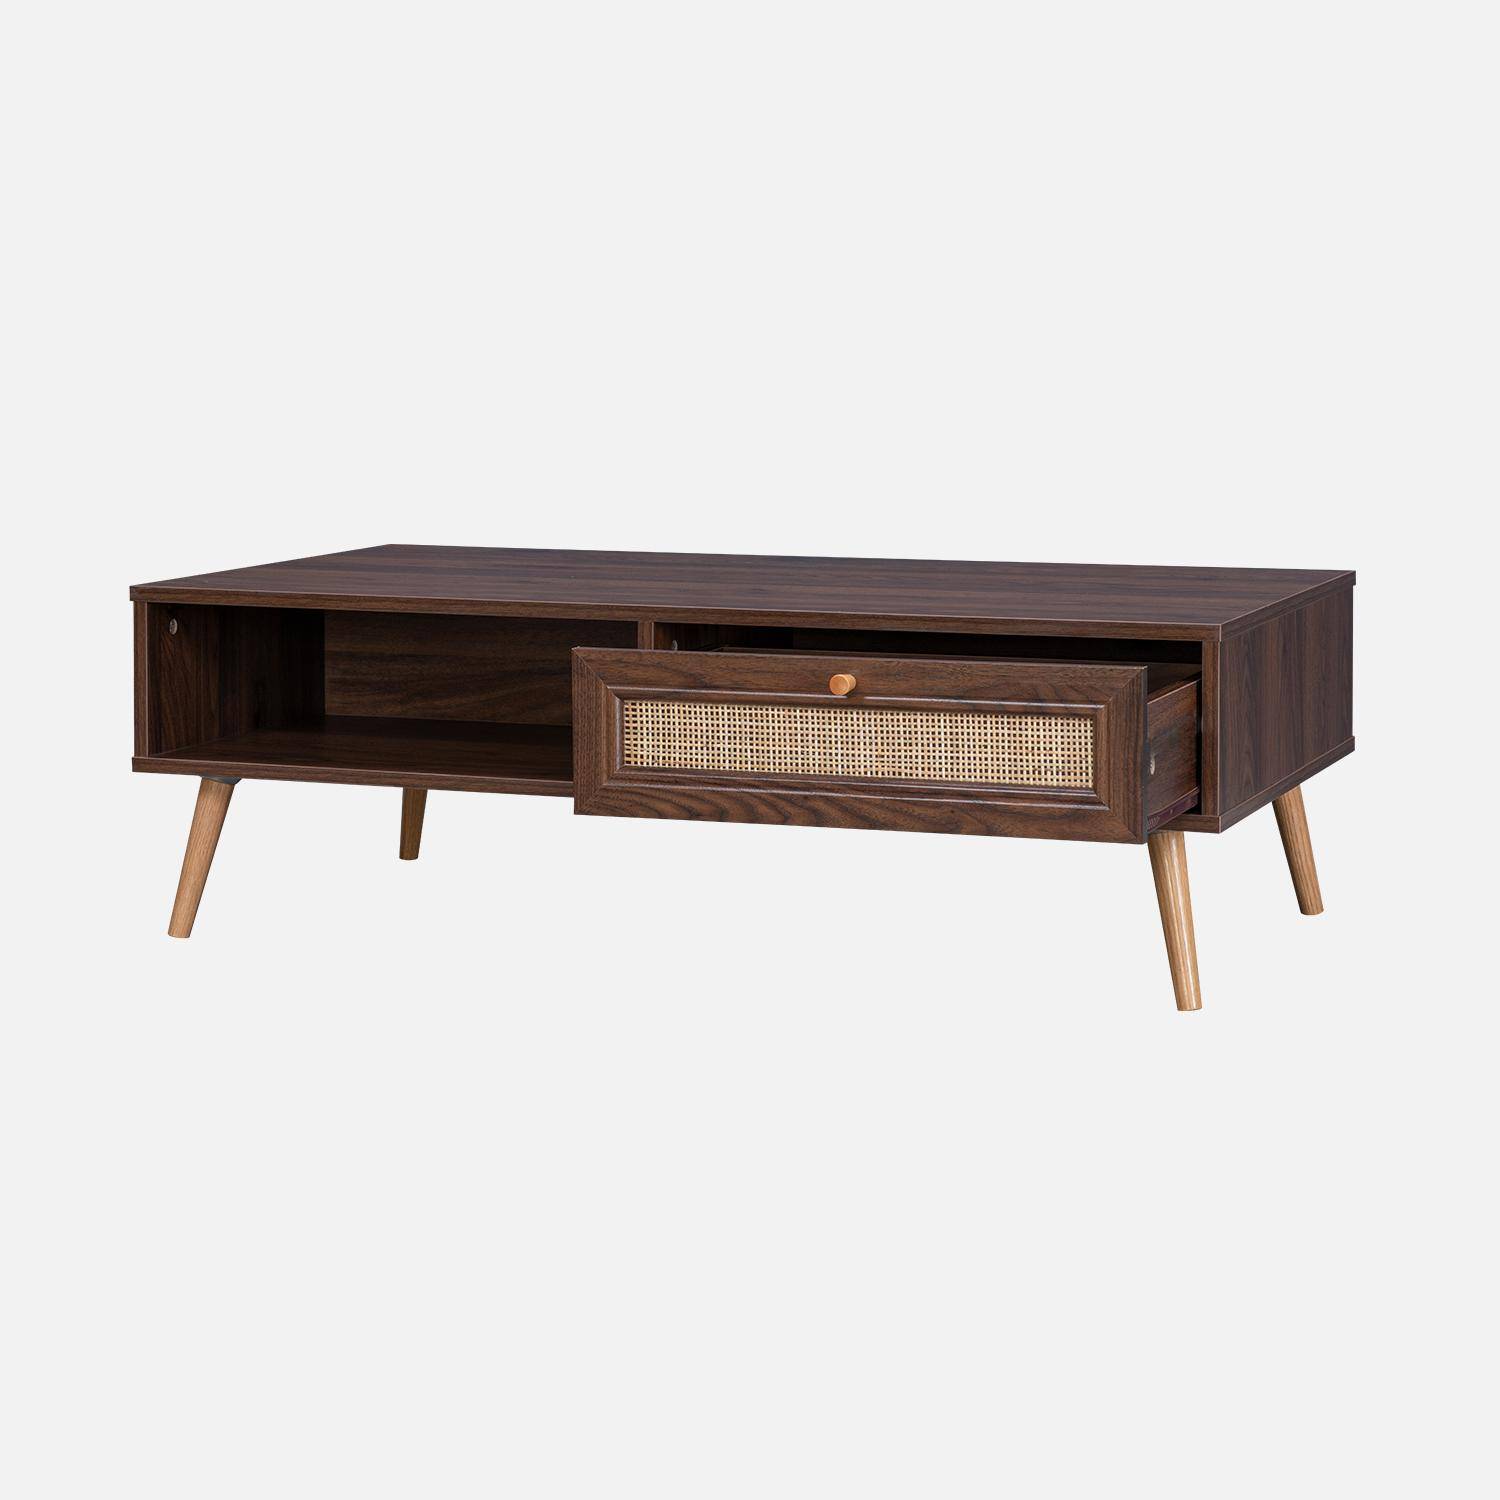 Table basse en cannage 110x59x39cm - Bohème - couleur bois foncé, 1 tiroir, 1 espace de rangement, pieds scandinaves Photo1